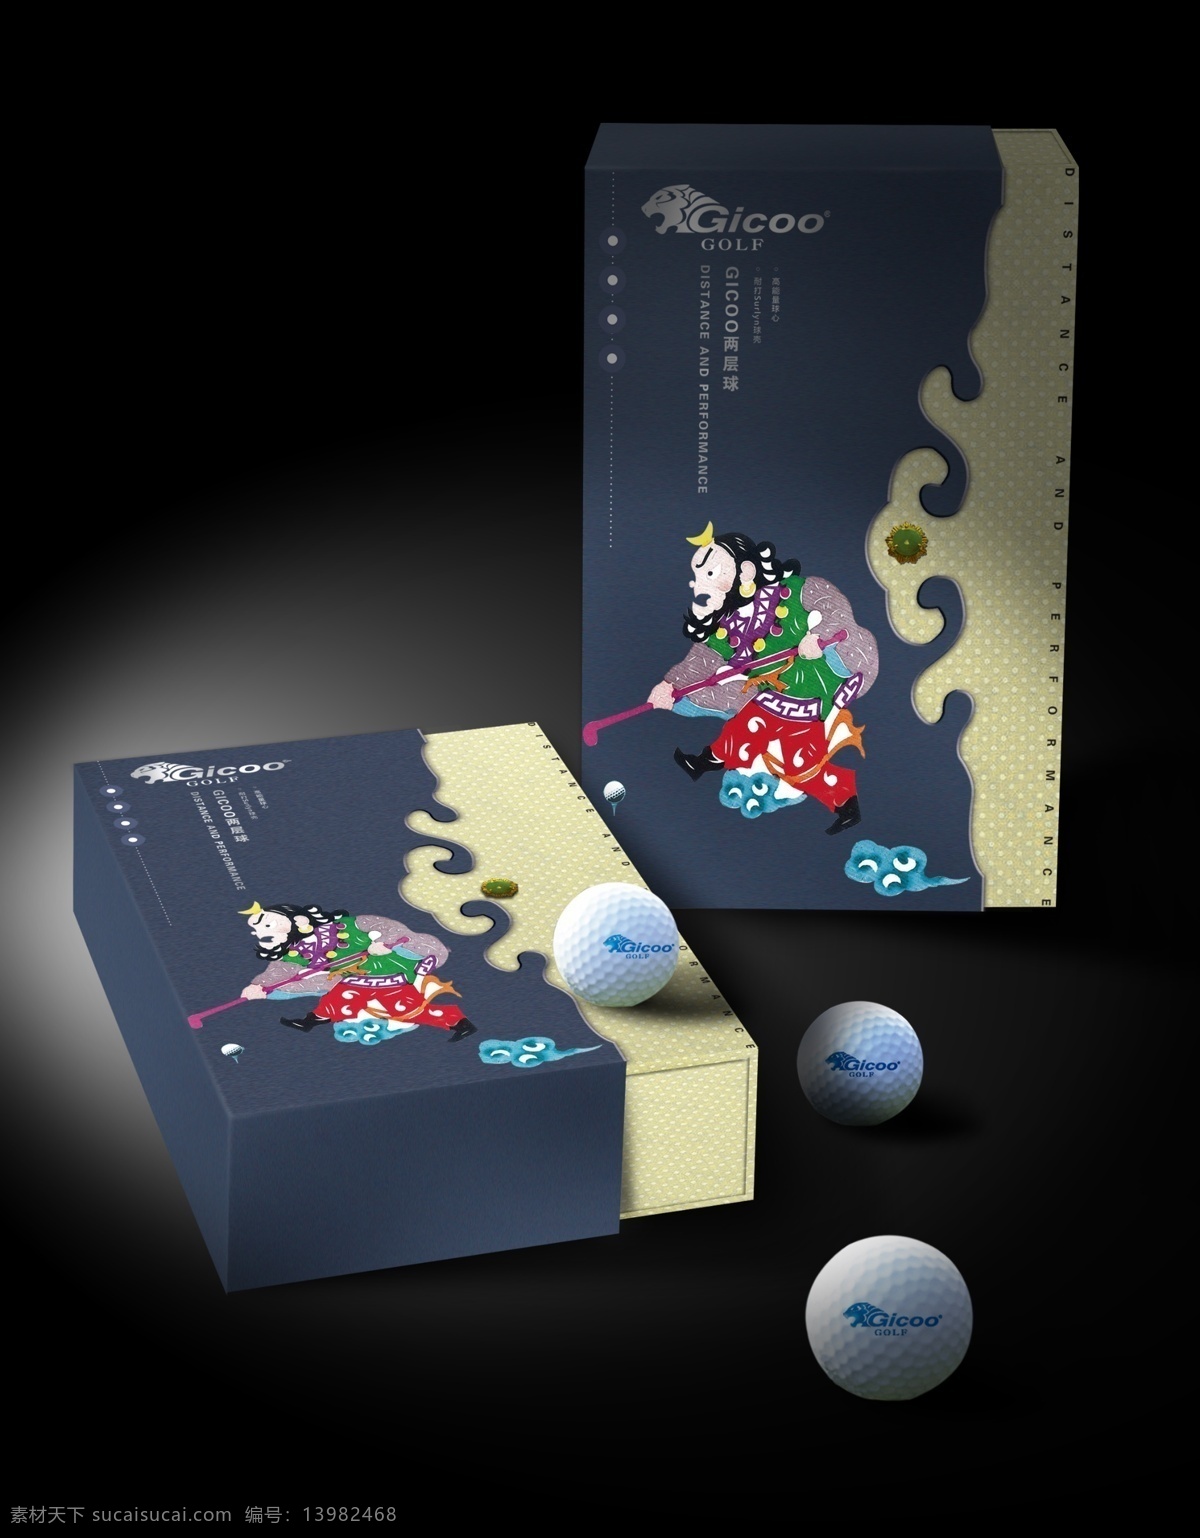 gicoo 剪纸 高尔夫球包装 高尔夫 包装设计 包装盒 礼品盒 效果图